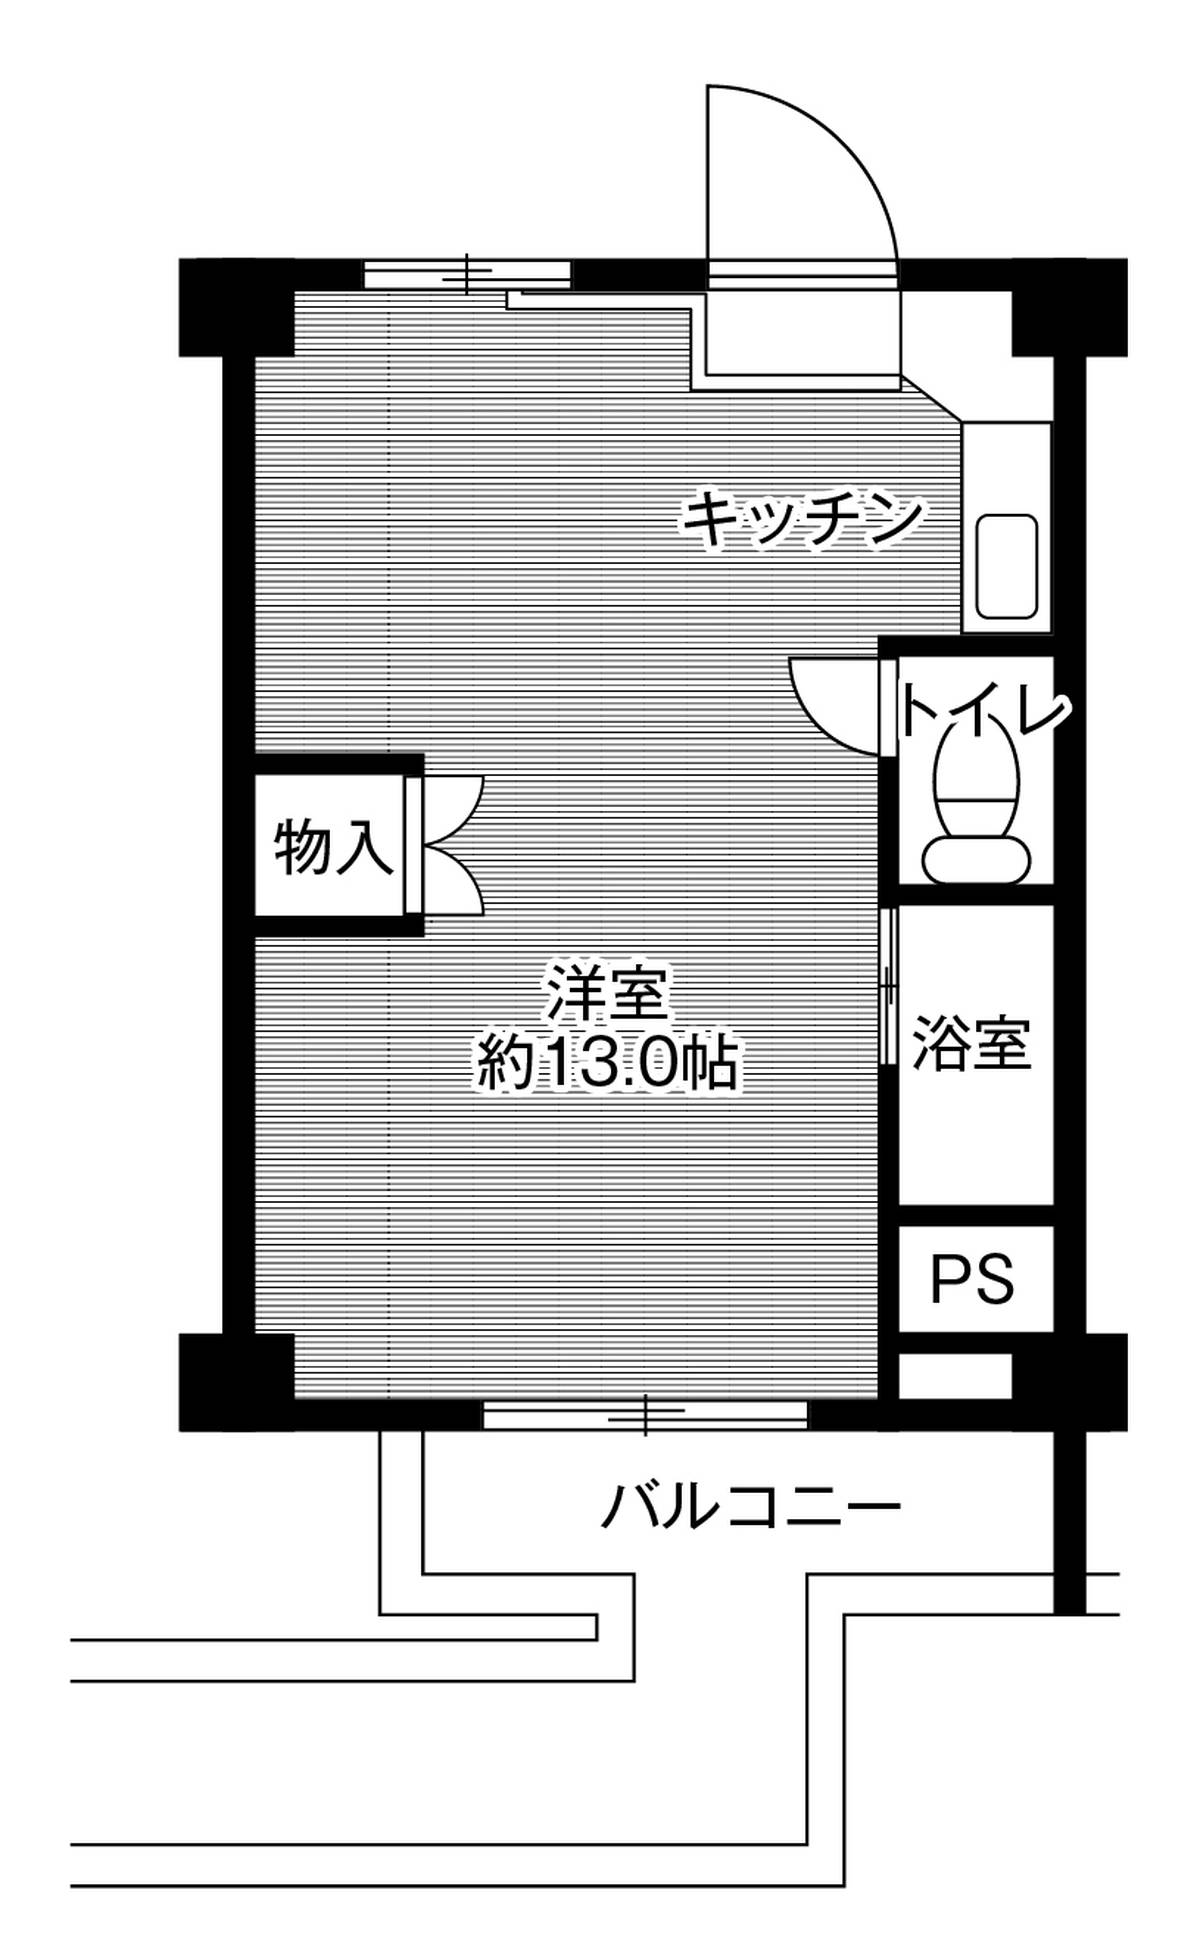 Sơ đồ phòng 1DK của Village House Takiyama ở Tottori-shi